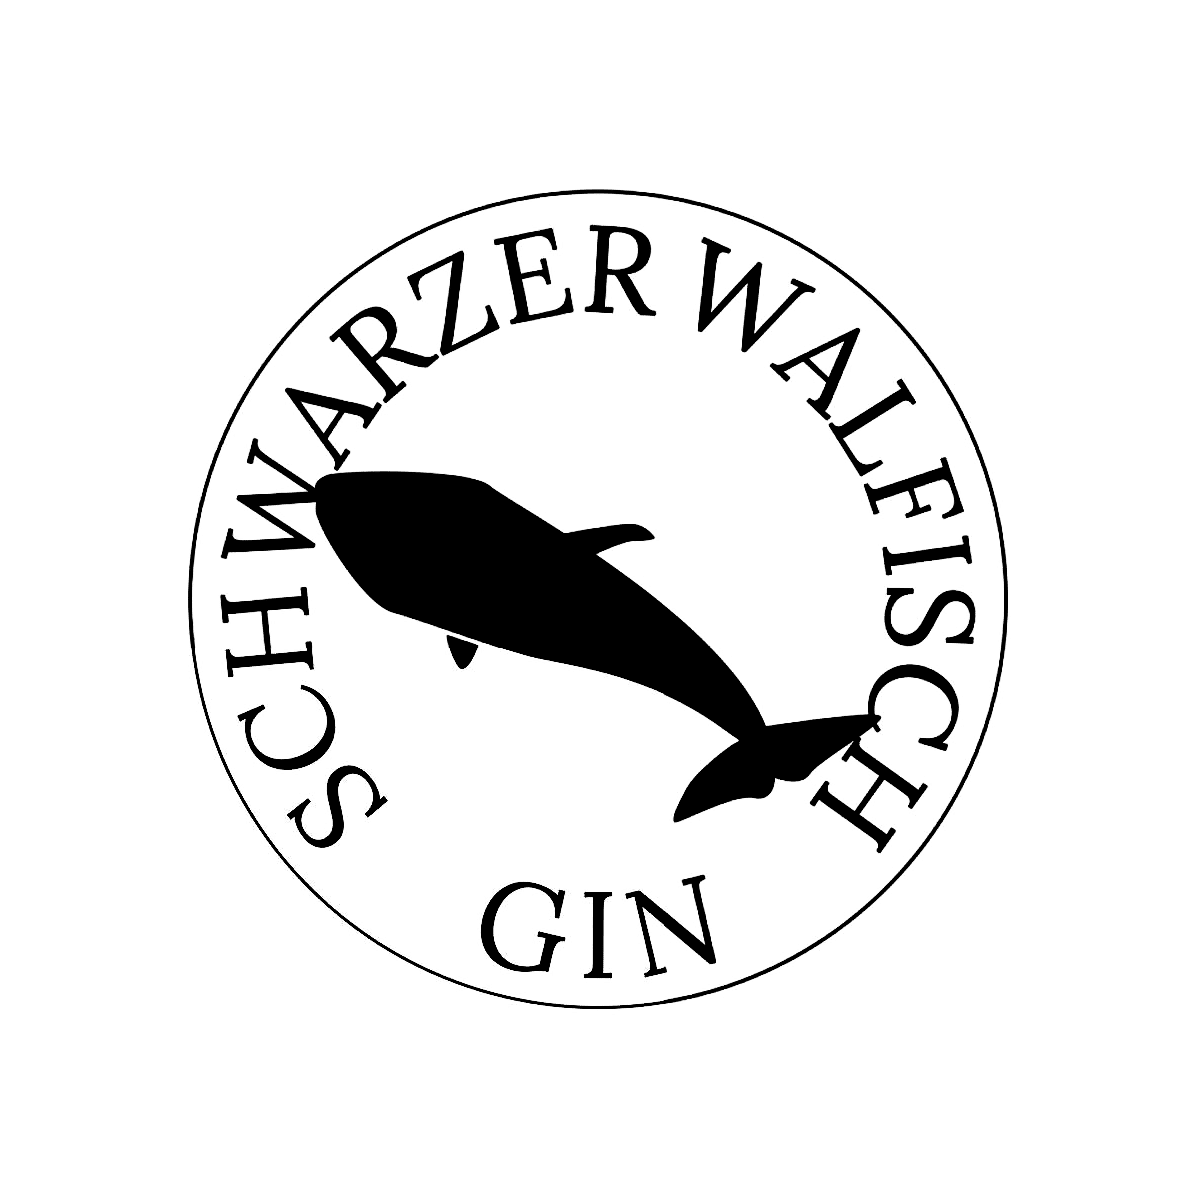 Hutmachers Schwarzer Walfisch Gin Logo